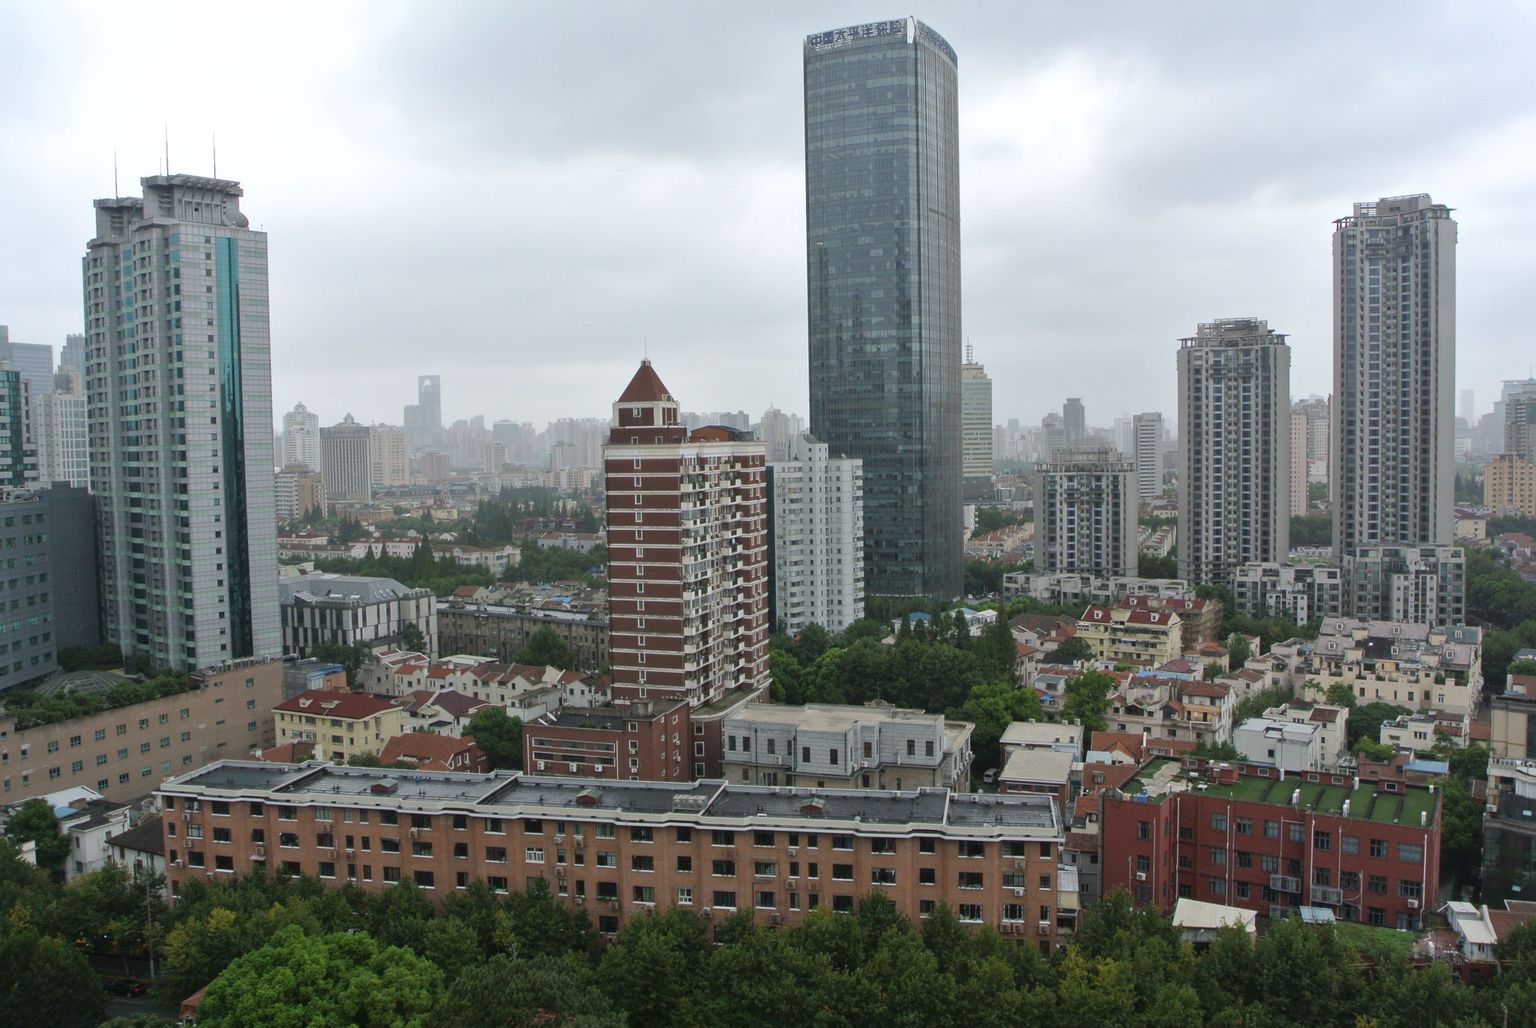 Vaade üsna keset Shanghaid asuvast hotellist Shanghai, kus elas Vanemuise 
ooperikoor ja ka Raimu Hanson. Pilt on tehtud hotelli aknast 18. korruselt.